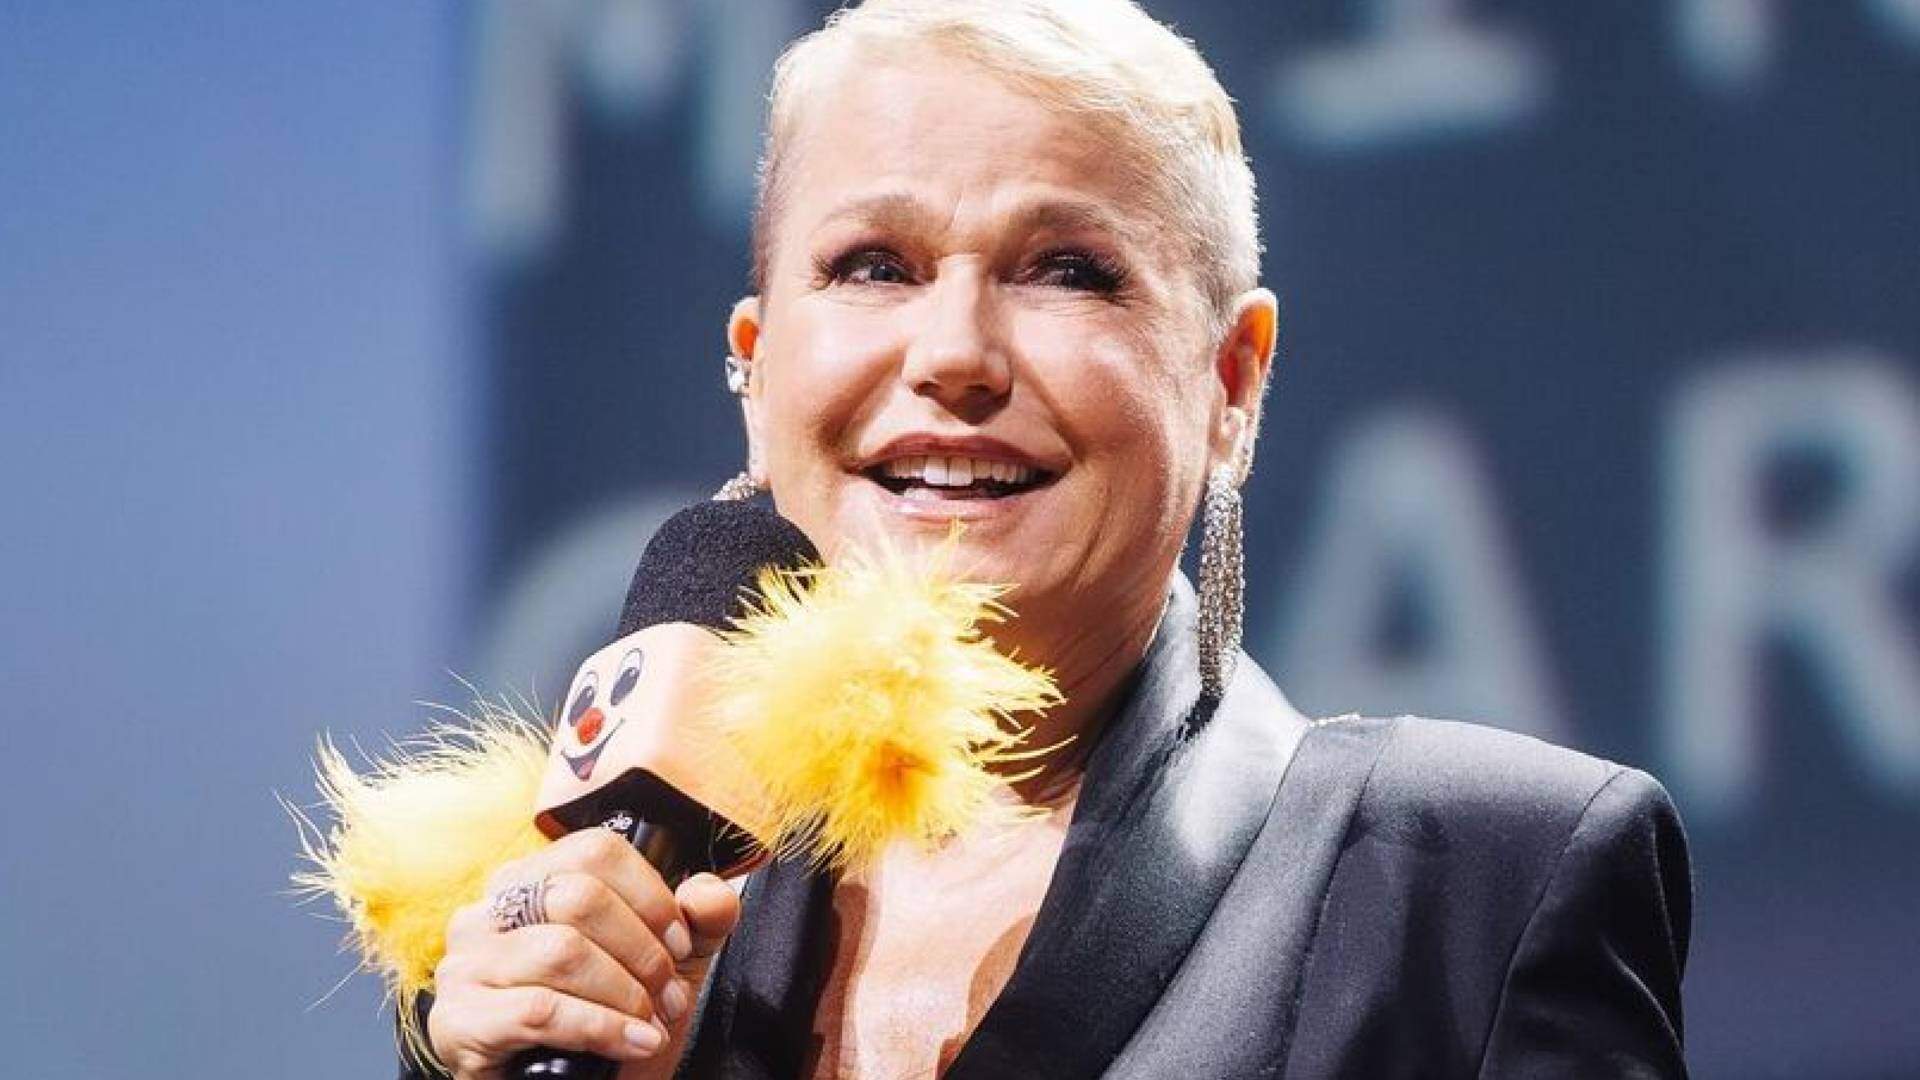 Xuxa cai no choro ao relembrar atitude polêmica que tinha como apresentadora infantil: “Desculpa” - Metropolitana FM